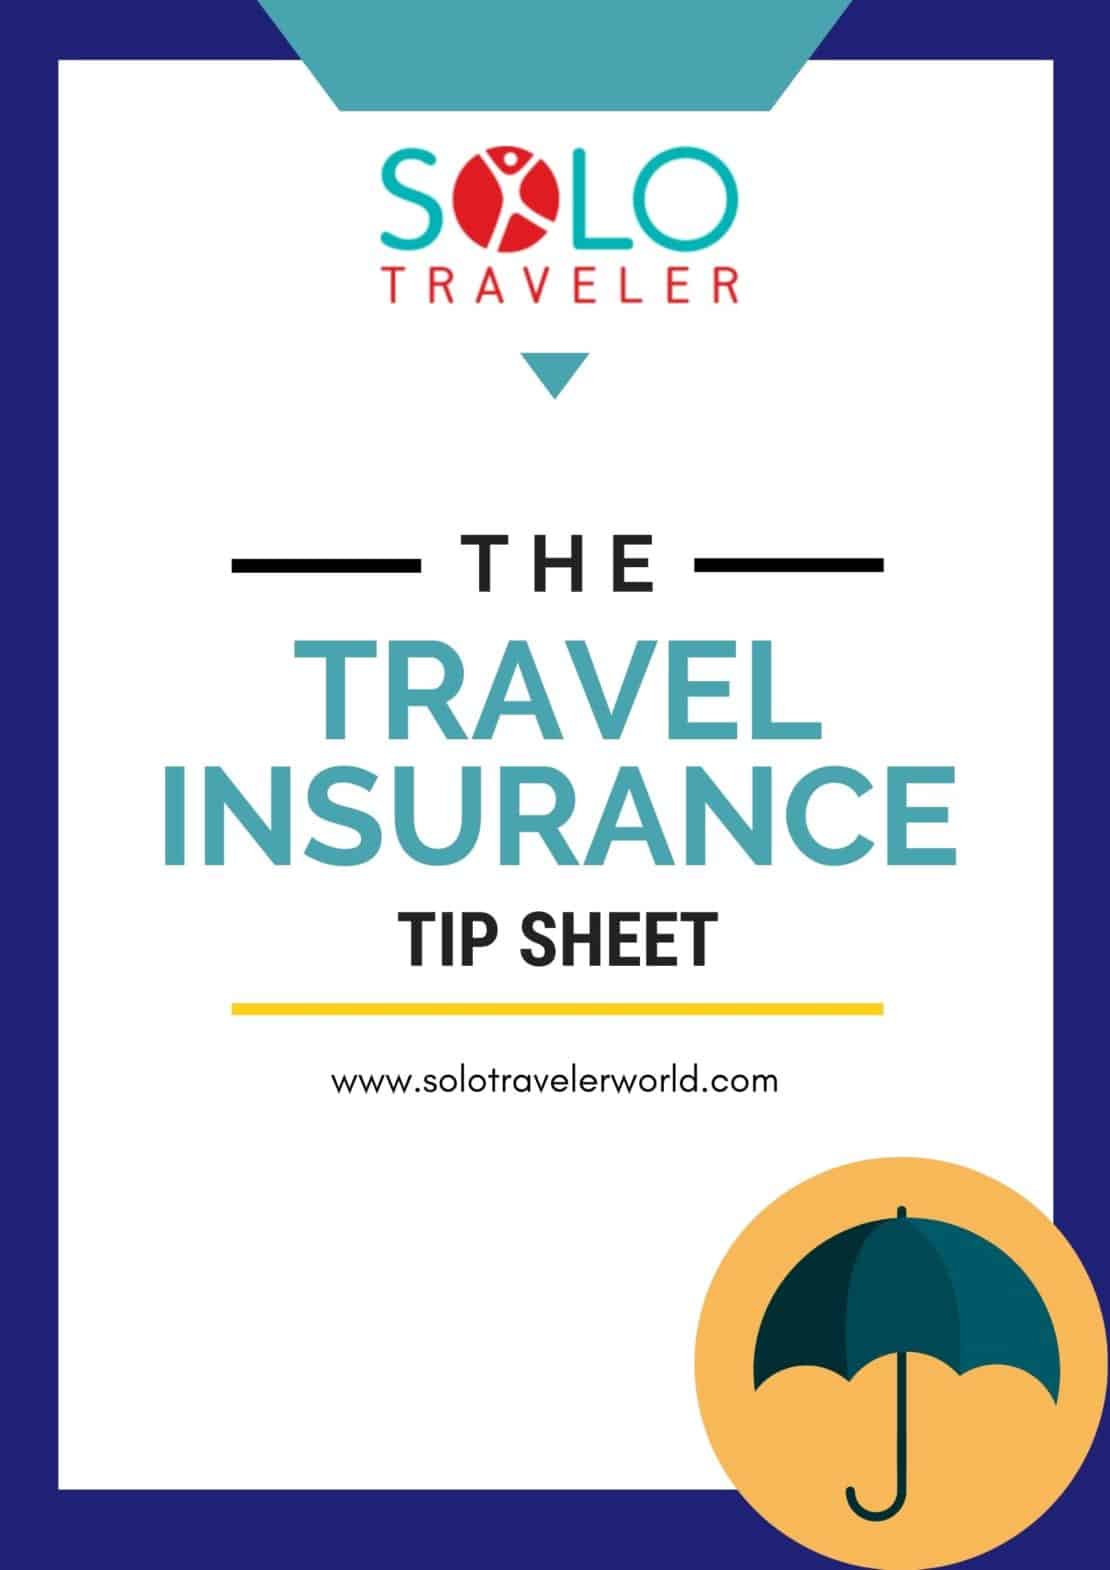 Solo Traveler Travel Insurance Tip Sheet Cover